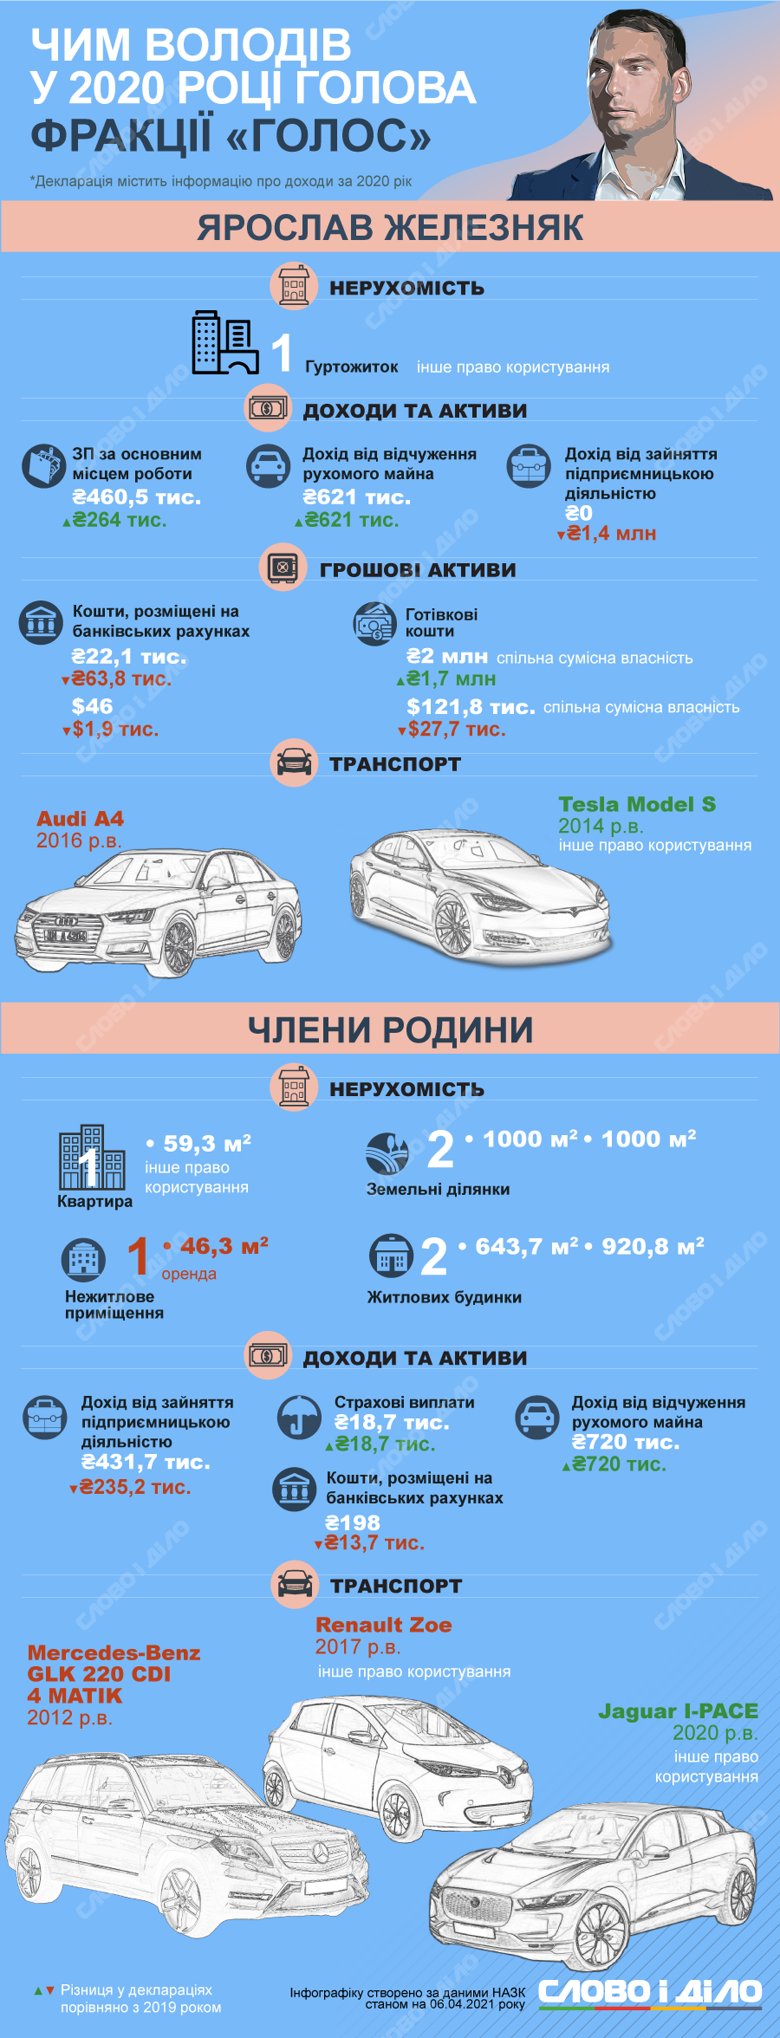 Ярослав Железняк задекларировал автомобиль Tesla, небольшие суммы на банковских счетах, а наличными он владеет вместе с супругой.